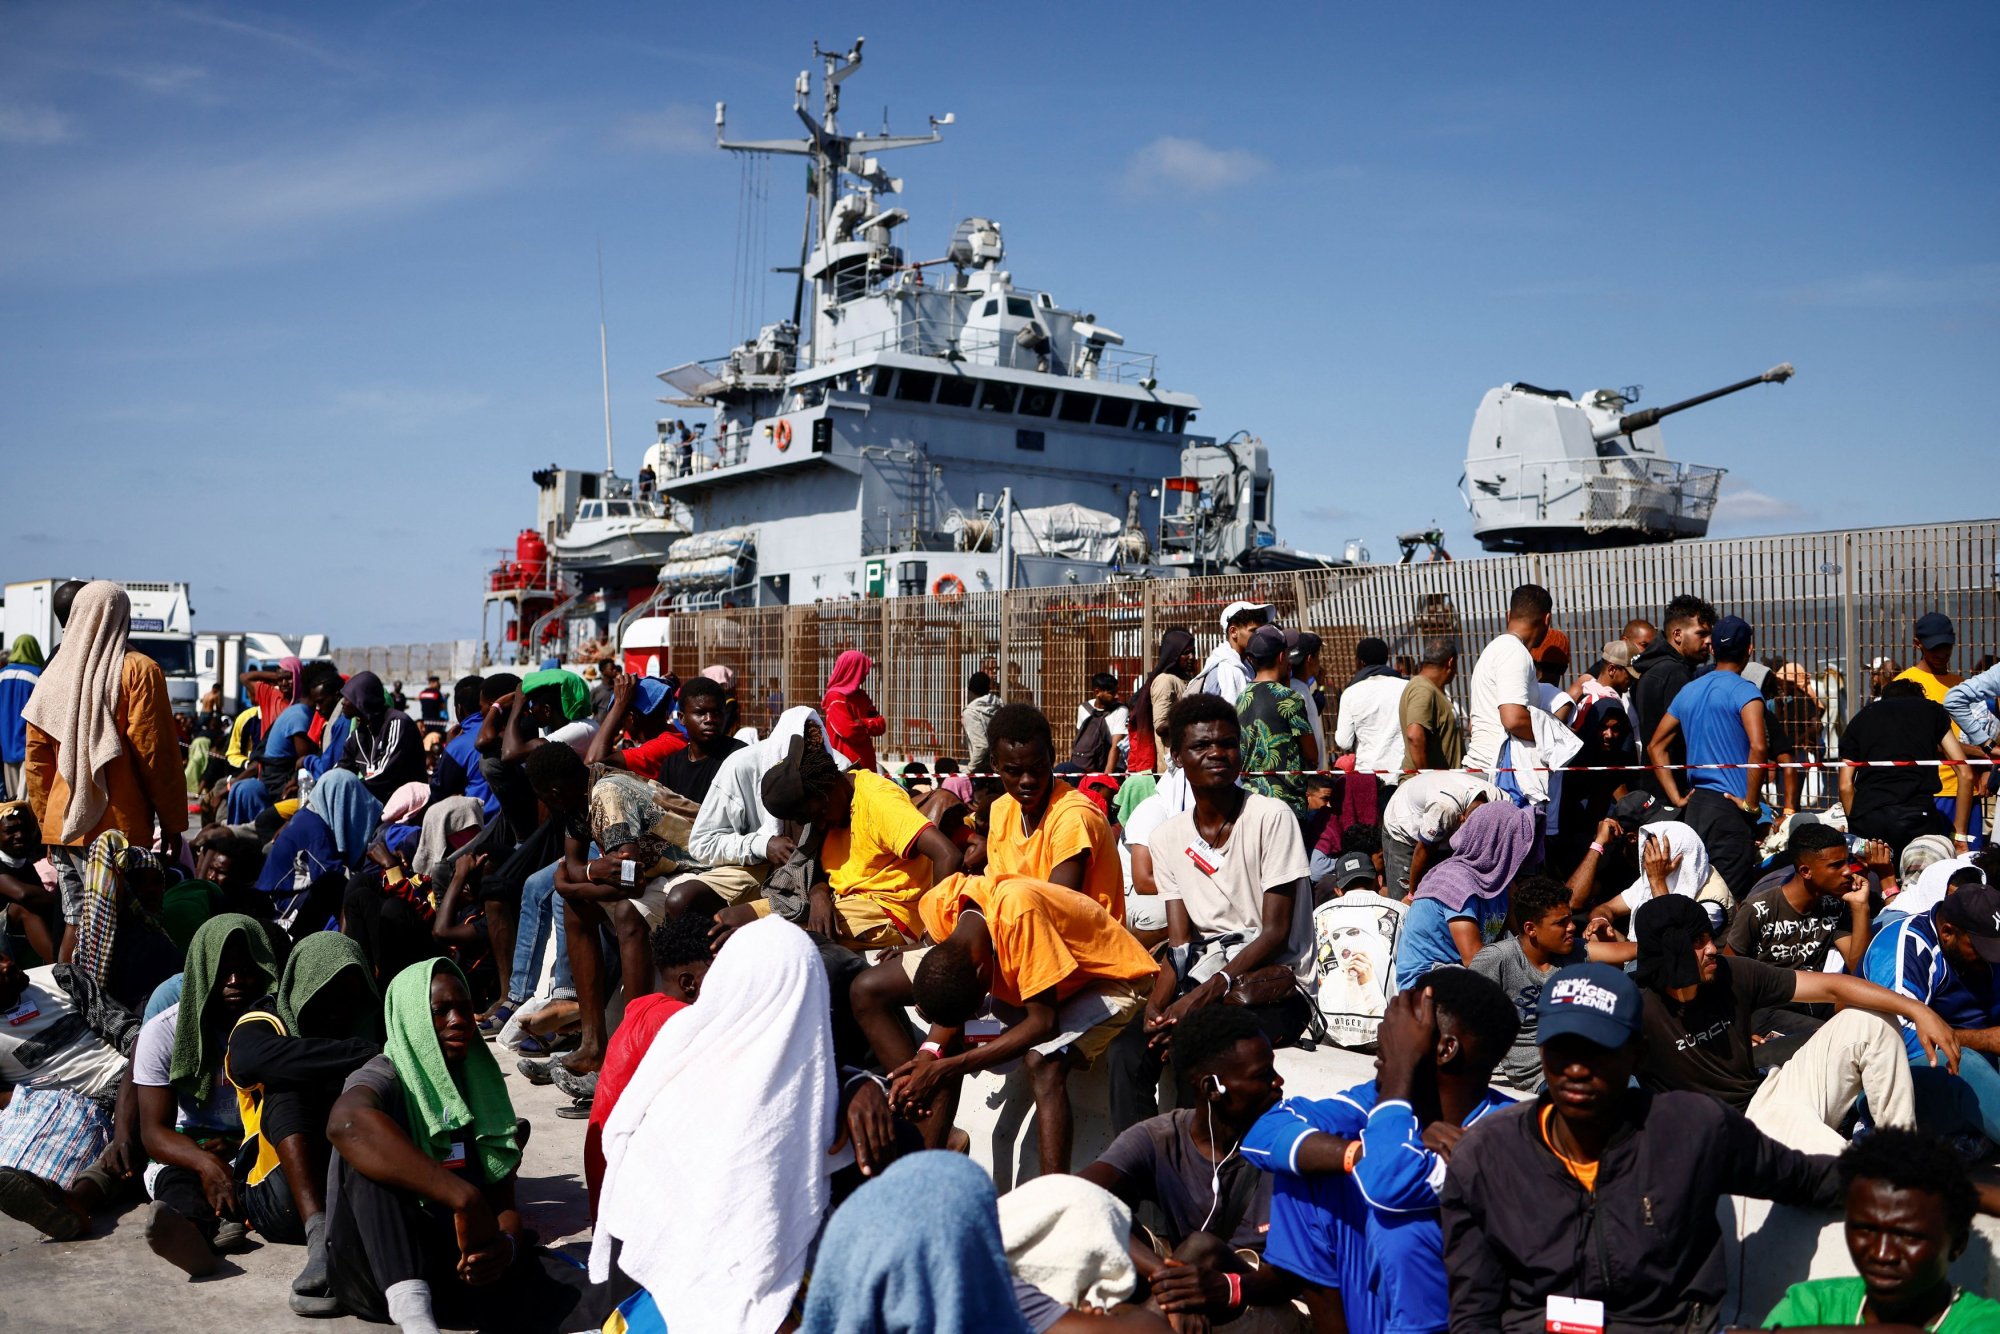 Μεταναστευτικό – Άρθρο Μεϊμαράκη – Βέμπερ: Η Ευρώπη «υπνοβατεί», είναι οικονομικοί μετανάστες όχι πρόσφυγες